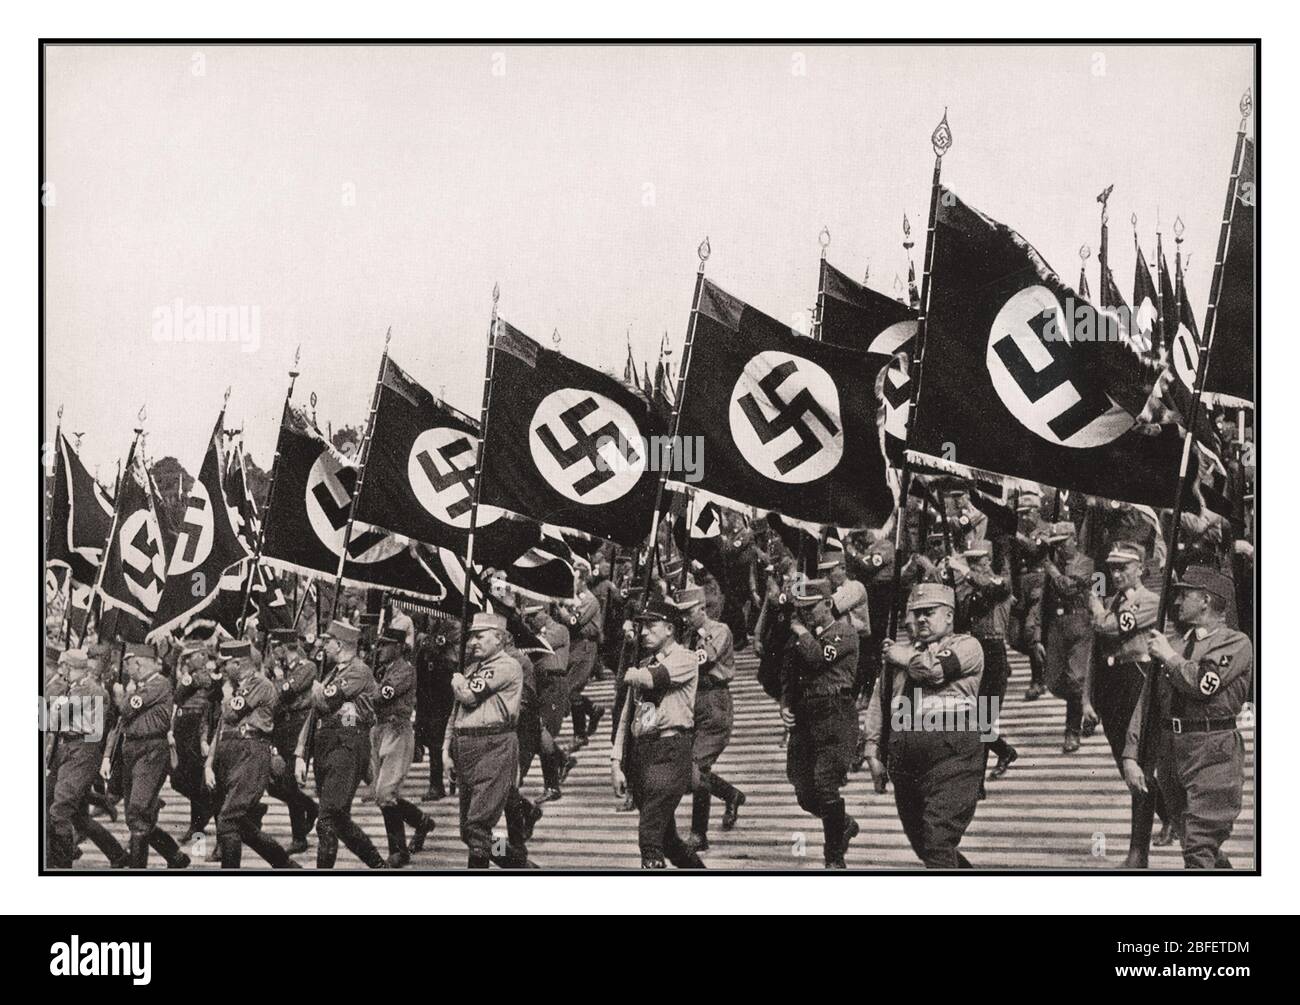 Sturmabteilung sa troupes Vintage allemand nazi Sturmabteilung sa troupes marchant avec les drapeaux nazi Swastika au rallye nazi Nuremberg Allemagne 1933. Utilisé comme image de couverture principale pour le film de propagande 'Triumph de la volonté par Leni Riefenstahl Banque D'Images